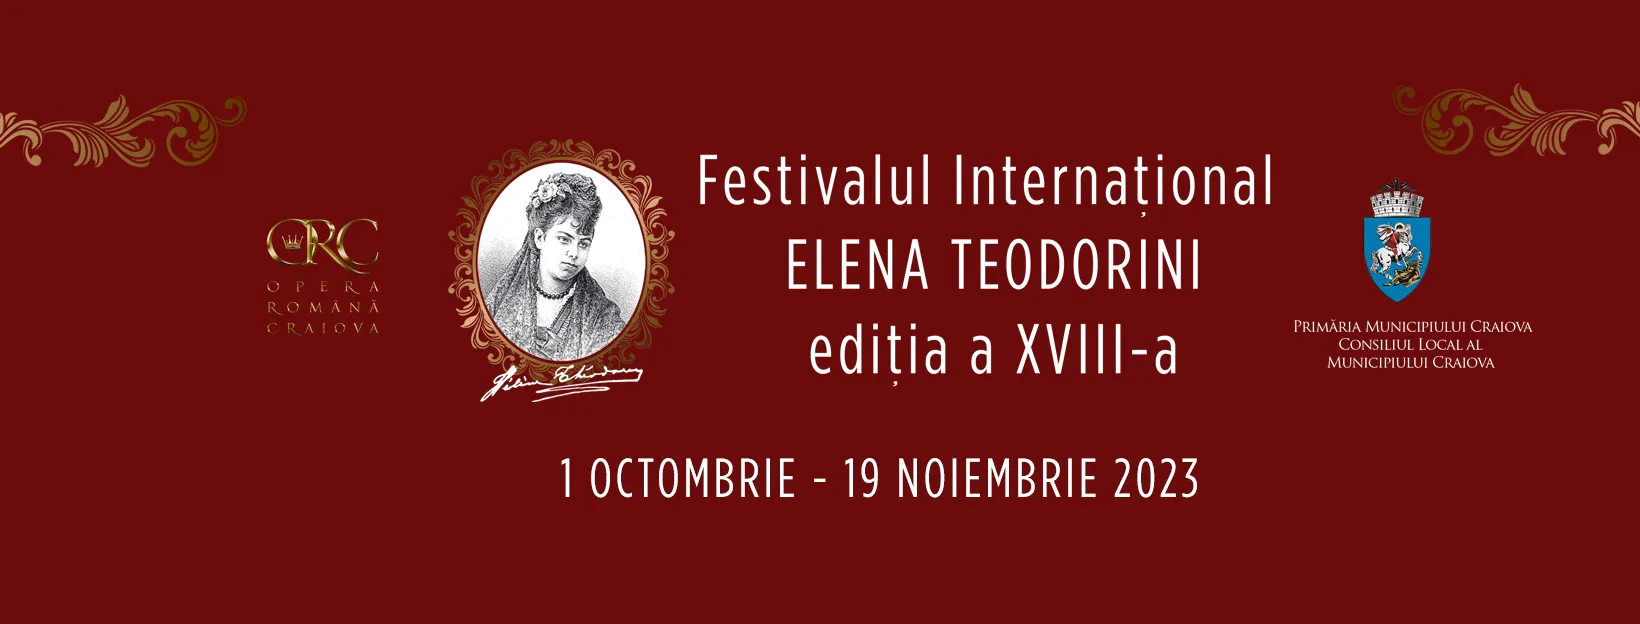 Opera Română Craiova: Festivalul Internațional Elena Teodorini, între 1 octombrie și 19 noiembrie